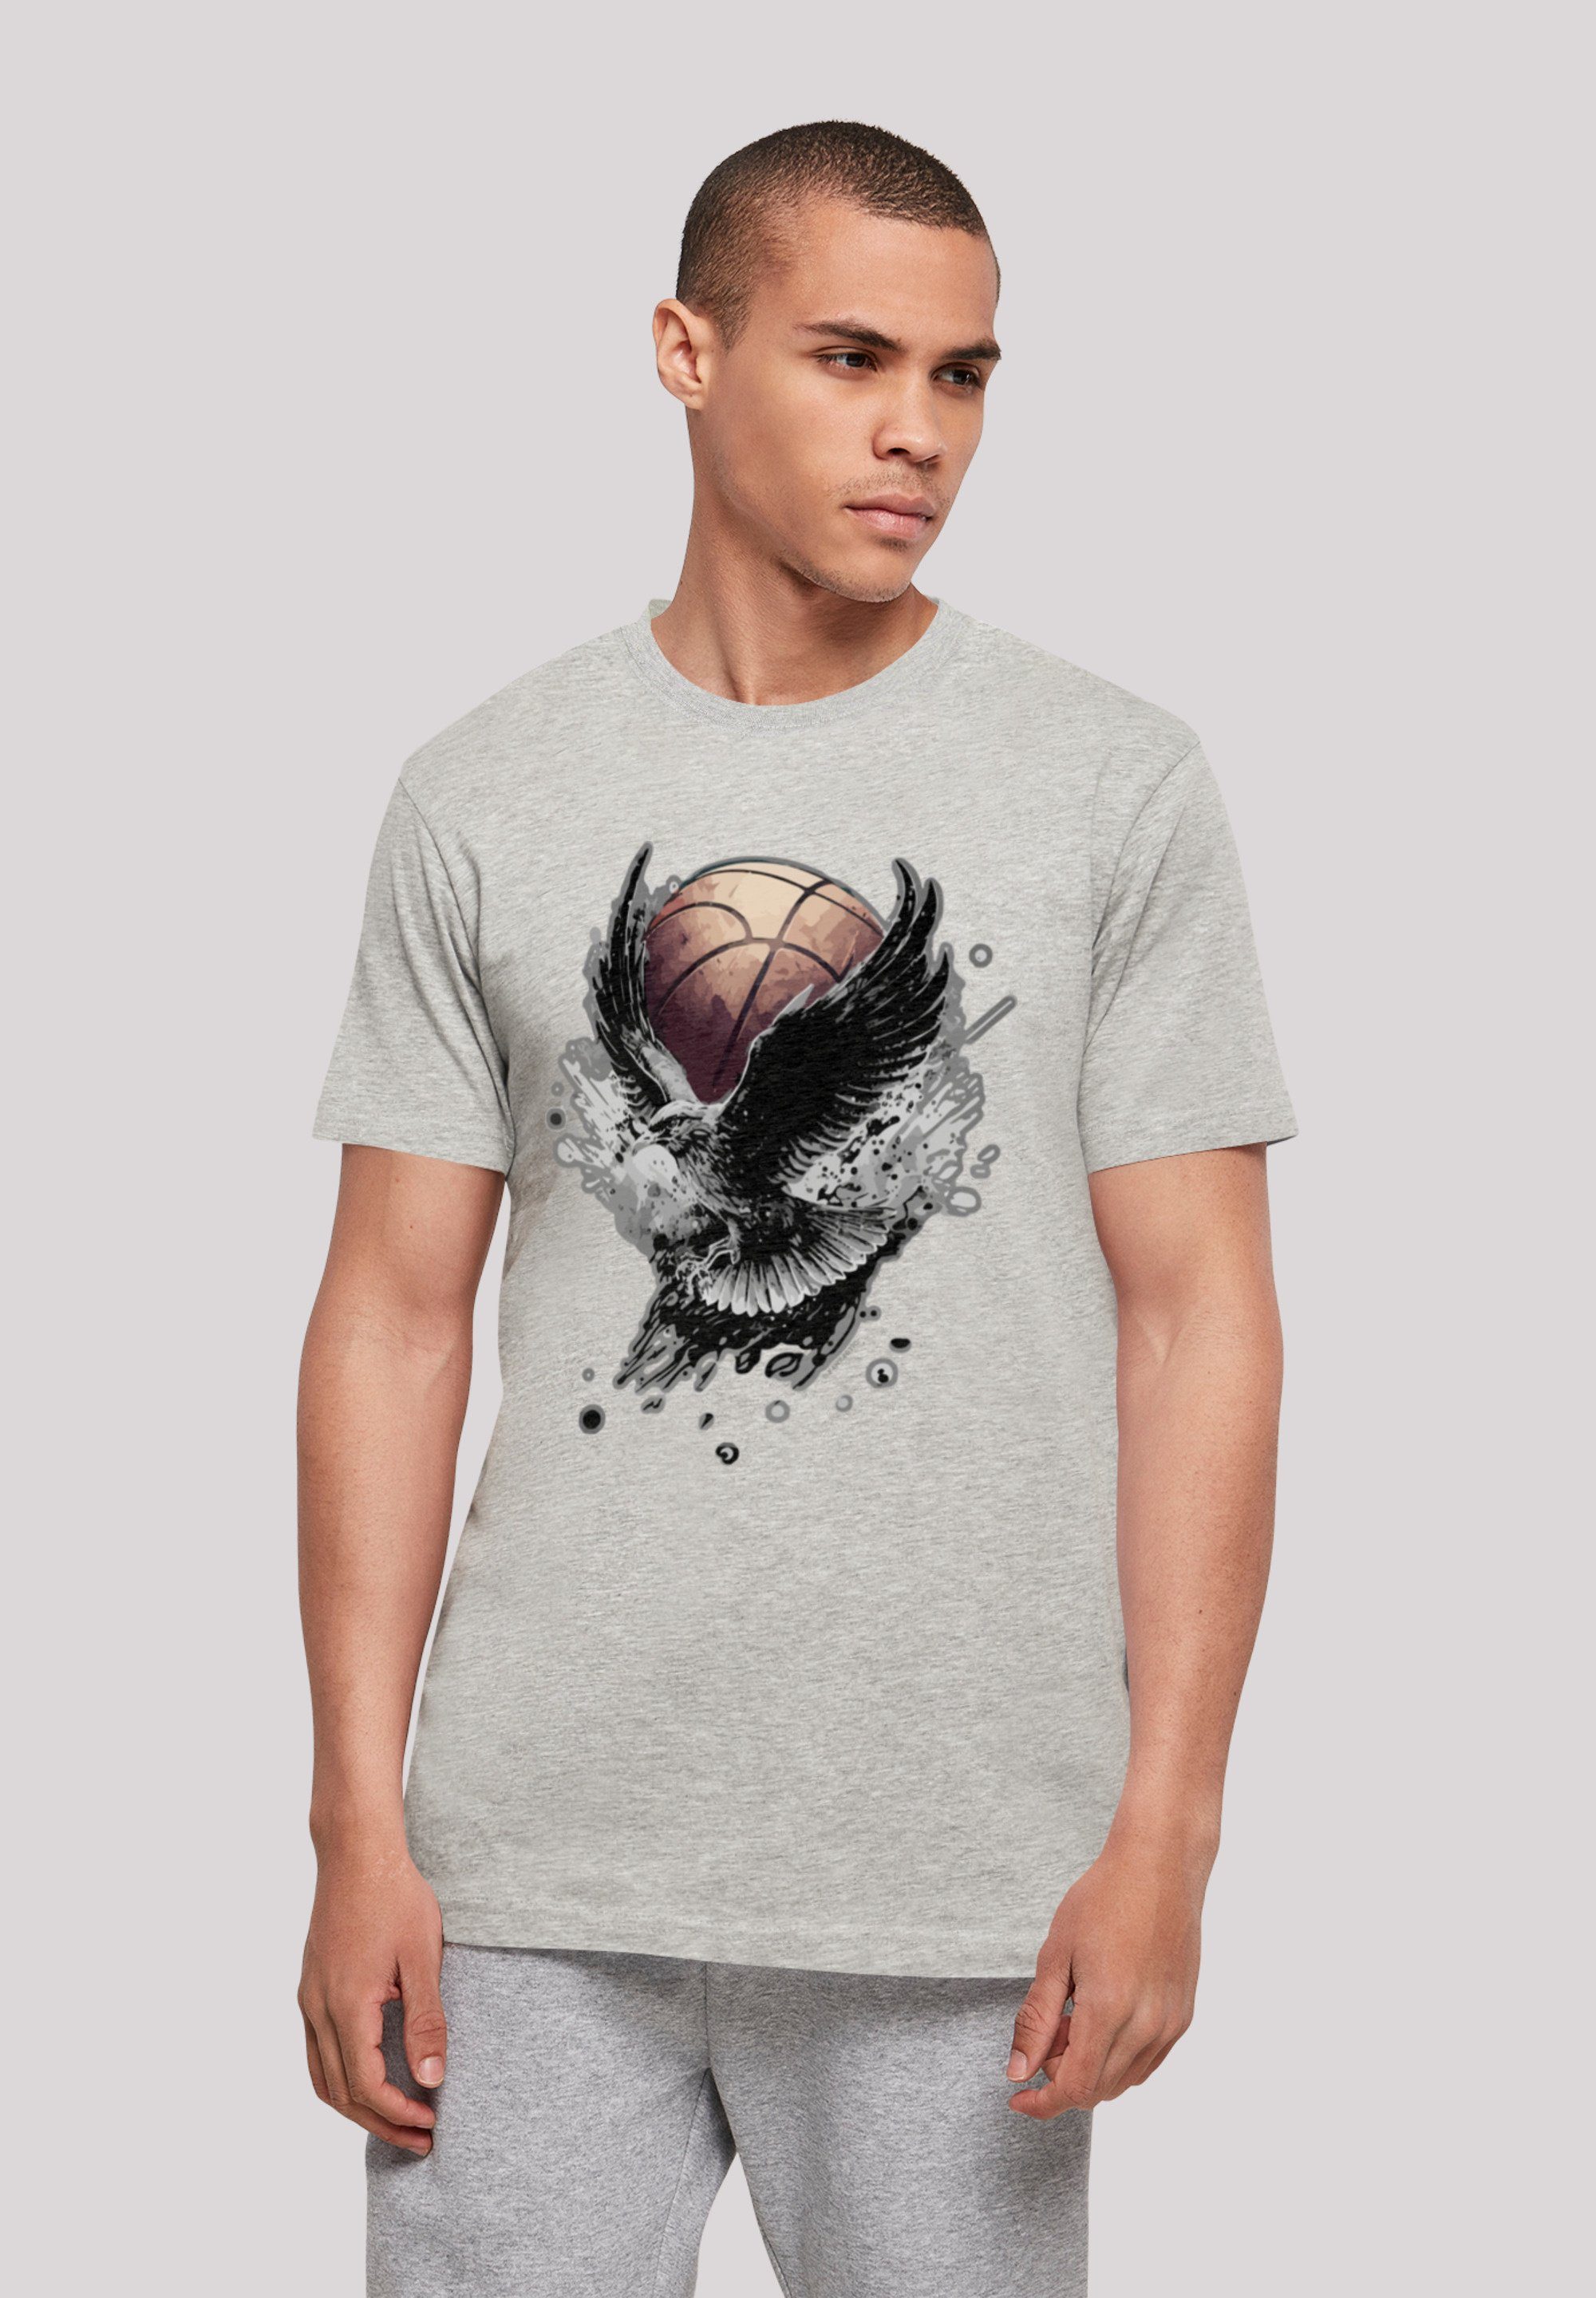 F4NT4STIC T-Shirt weicher mit Adler Basketball Tragekomfort hohem Sehr Print, Baumwollstoff